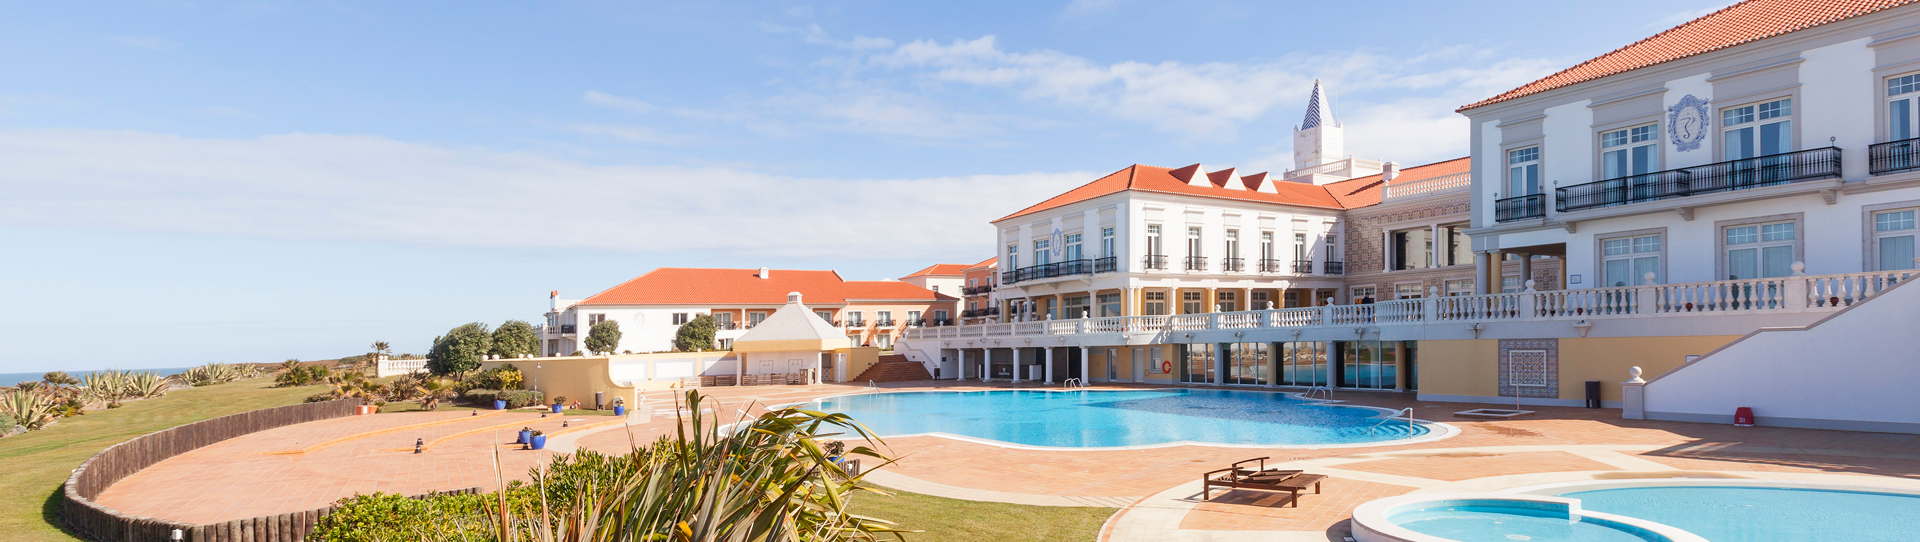 Portugal golf holidays - Praia Del Rey Marriott Golf & Beach Resort - Photo 1